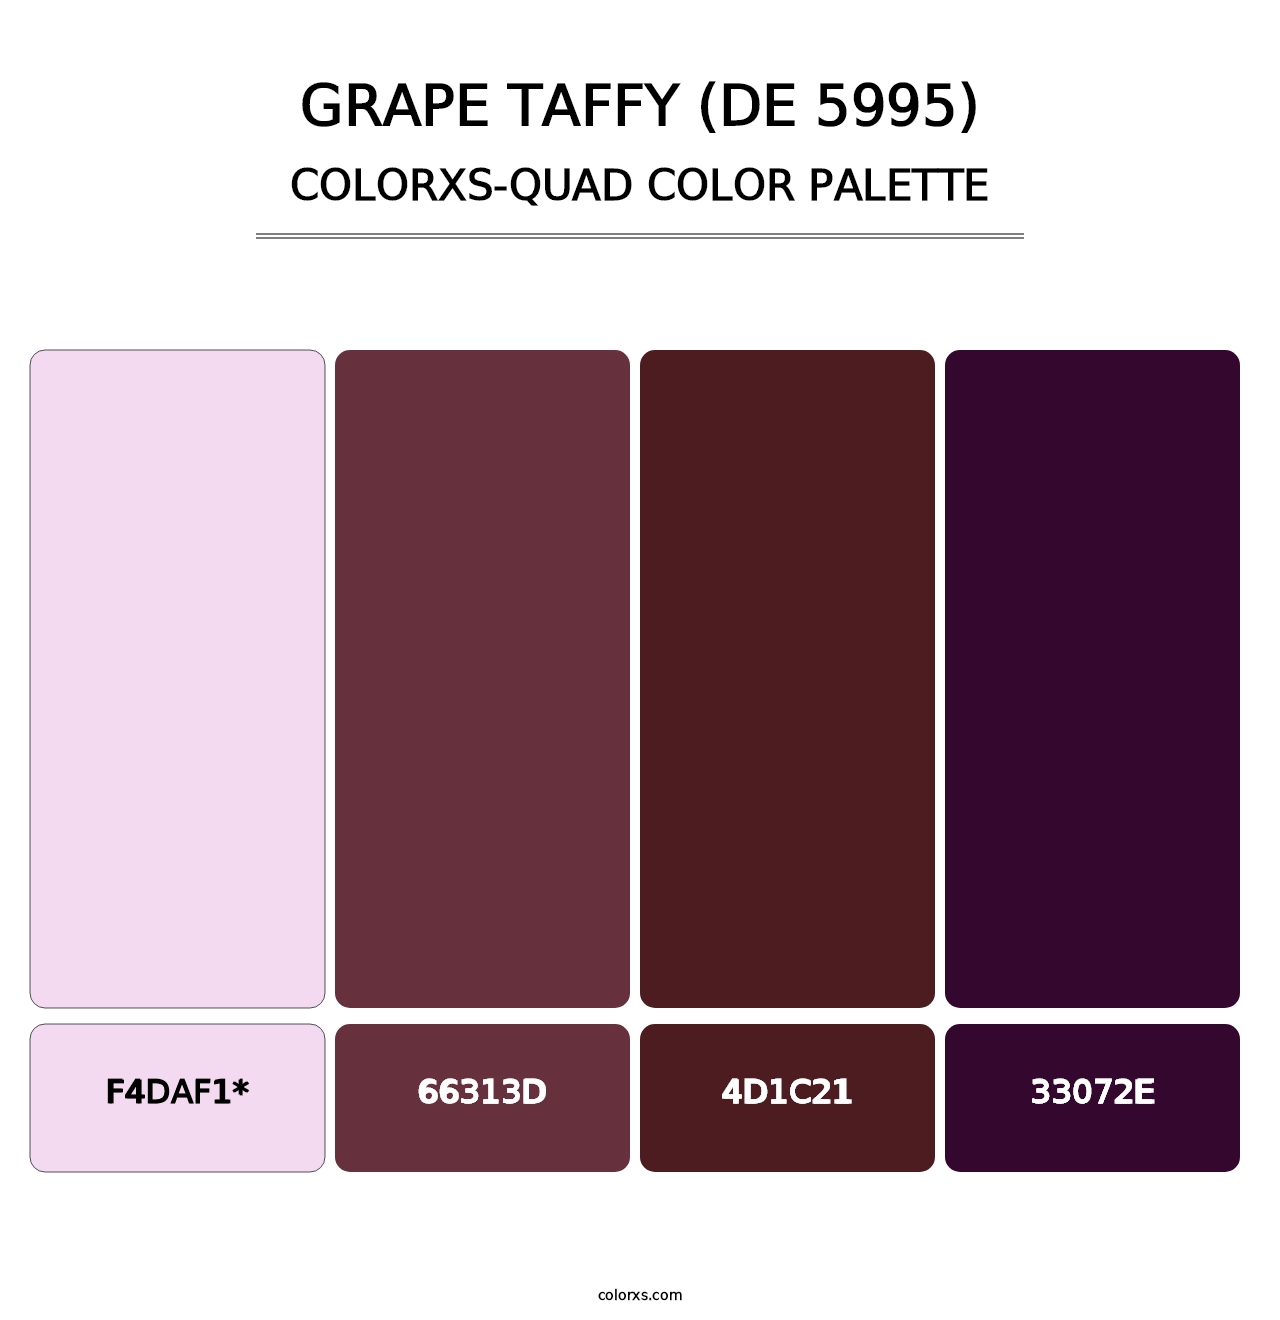 Grape Taffy (DE 5995) - Colorxs Quad Palette